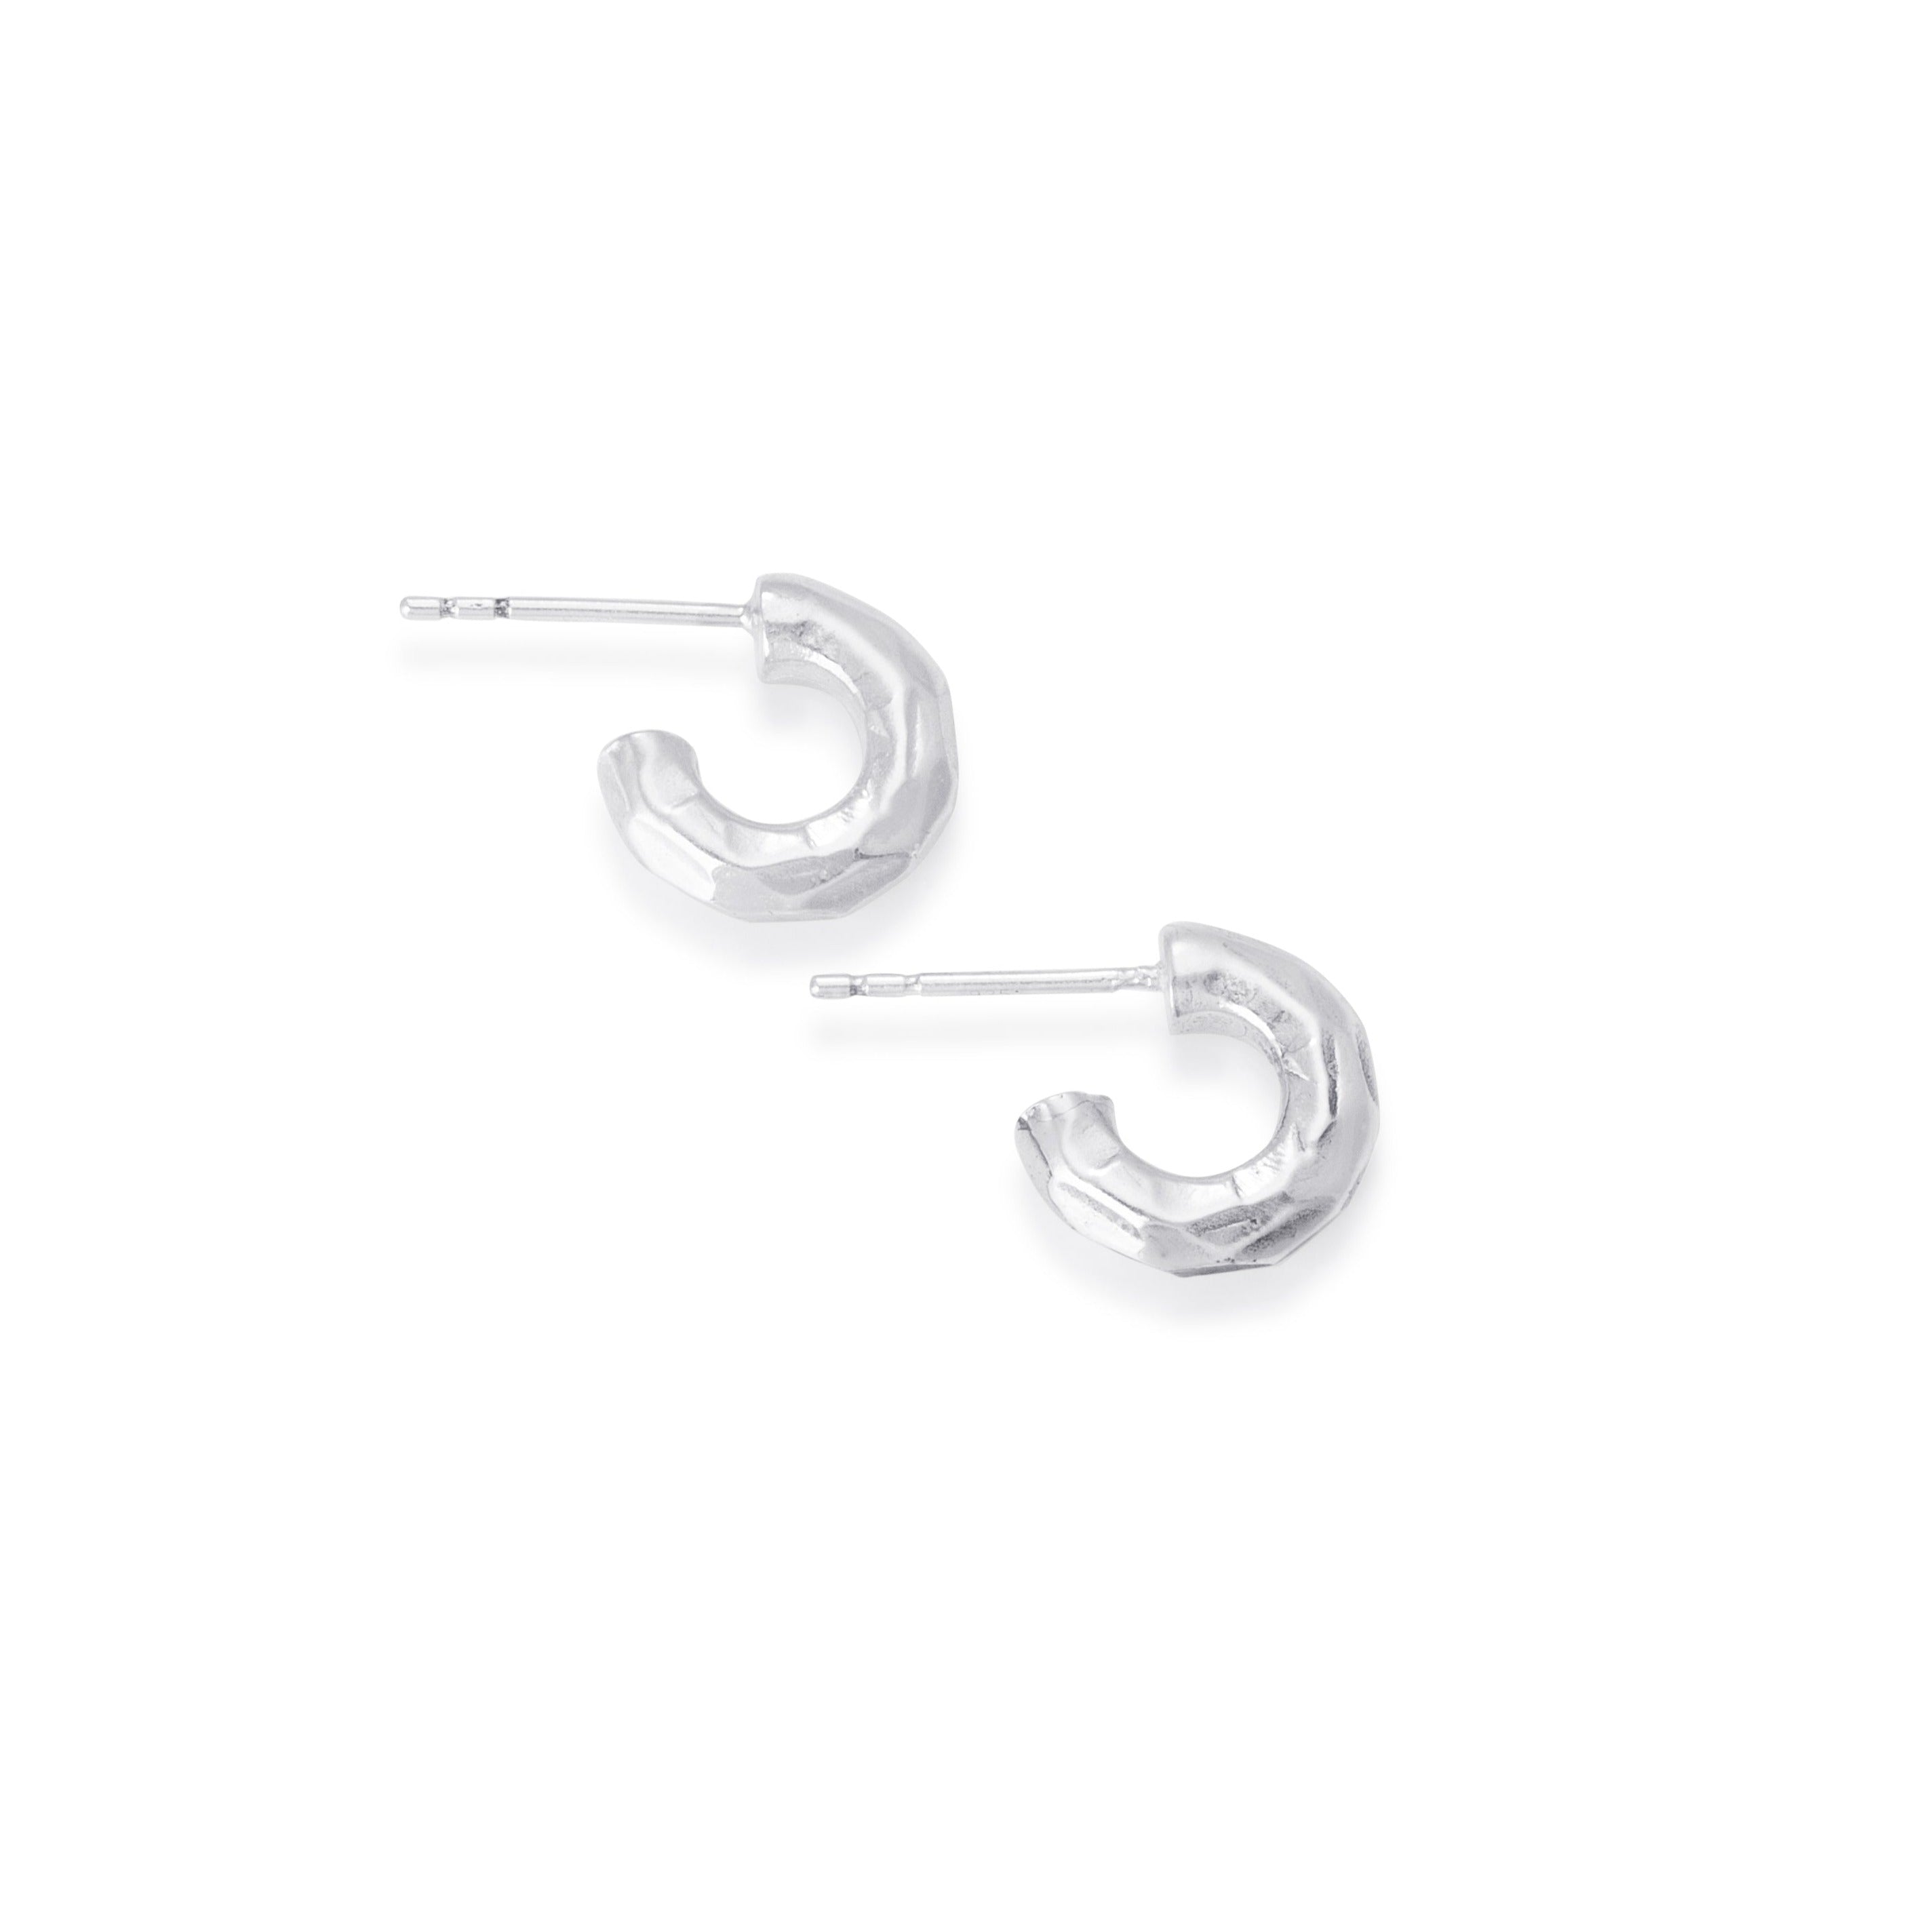 Bloodline Design Solid Sterling Silver Chiseled Hoop Earrings